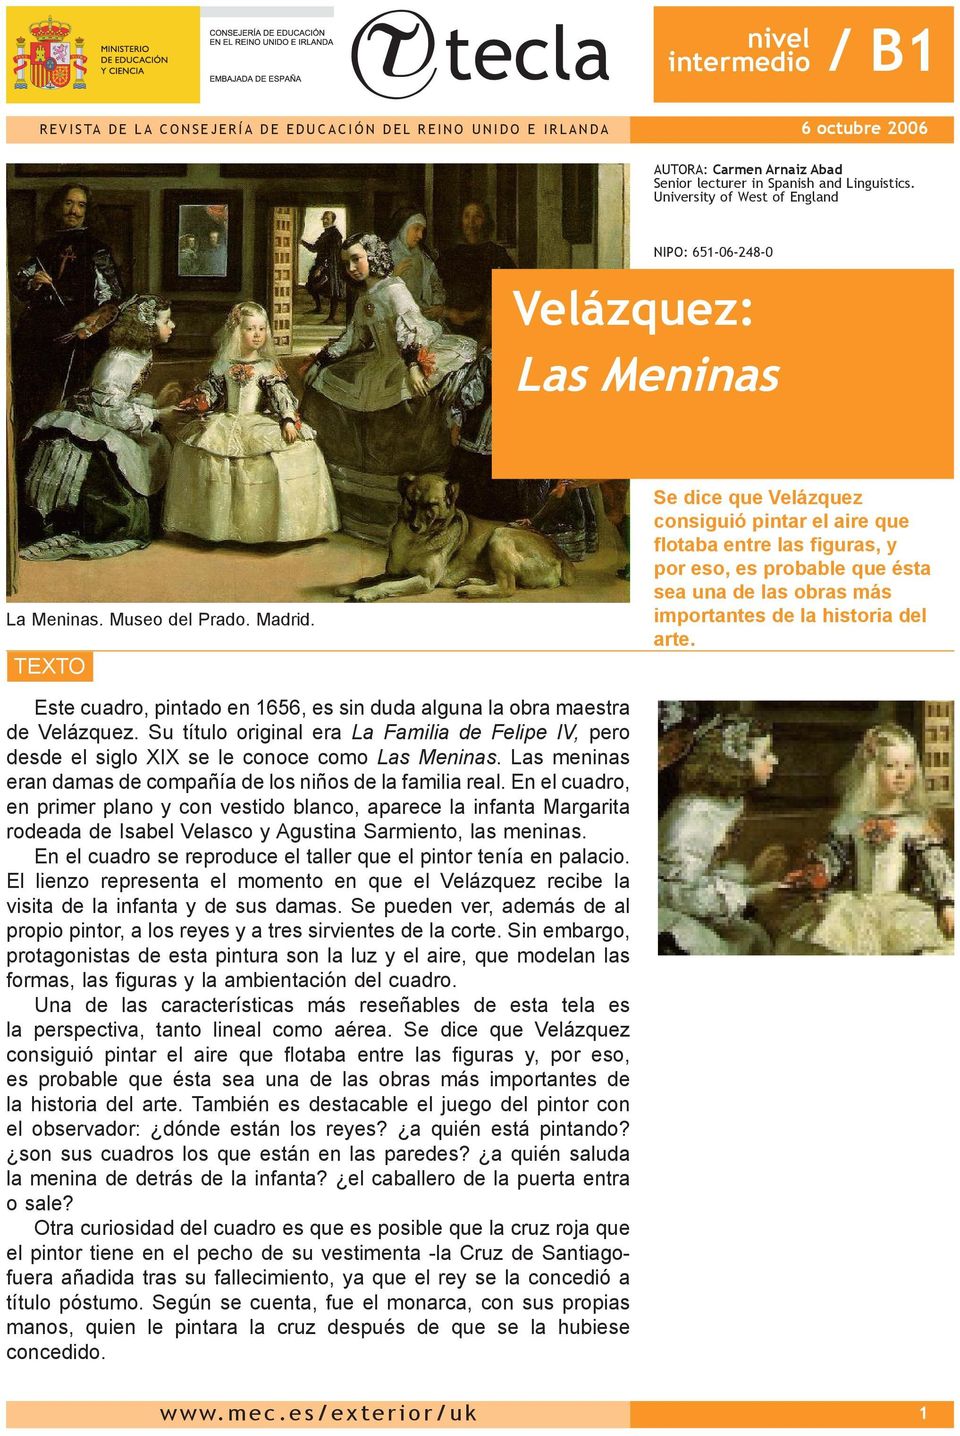 TEXTO Se dice que Velázquez consiguió pintar el aire que flotaba entre las figuras, y por eso, es probable que ésta sea una de las obras más importantes de la historia del arte.